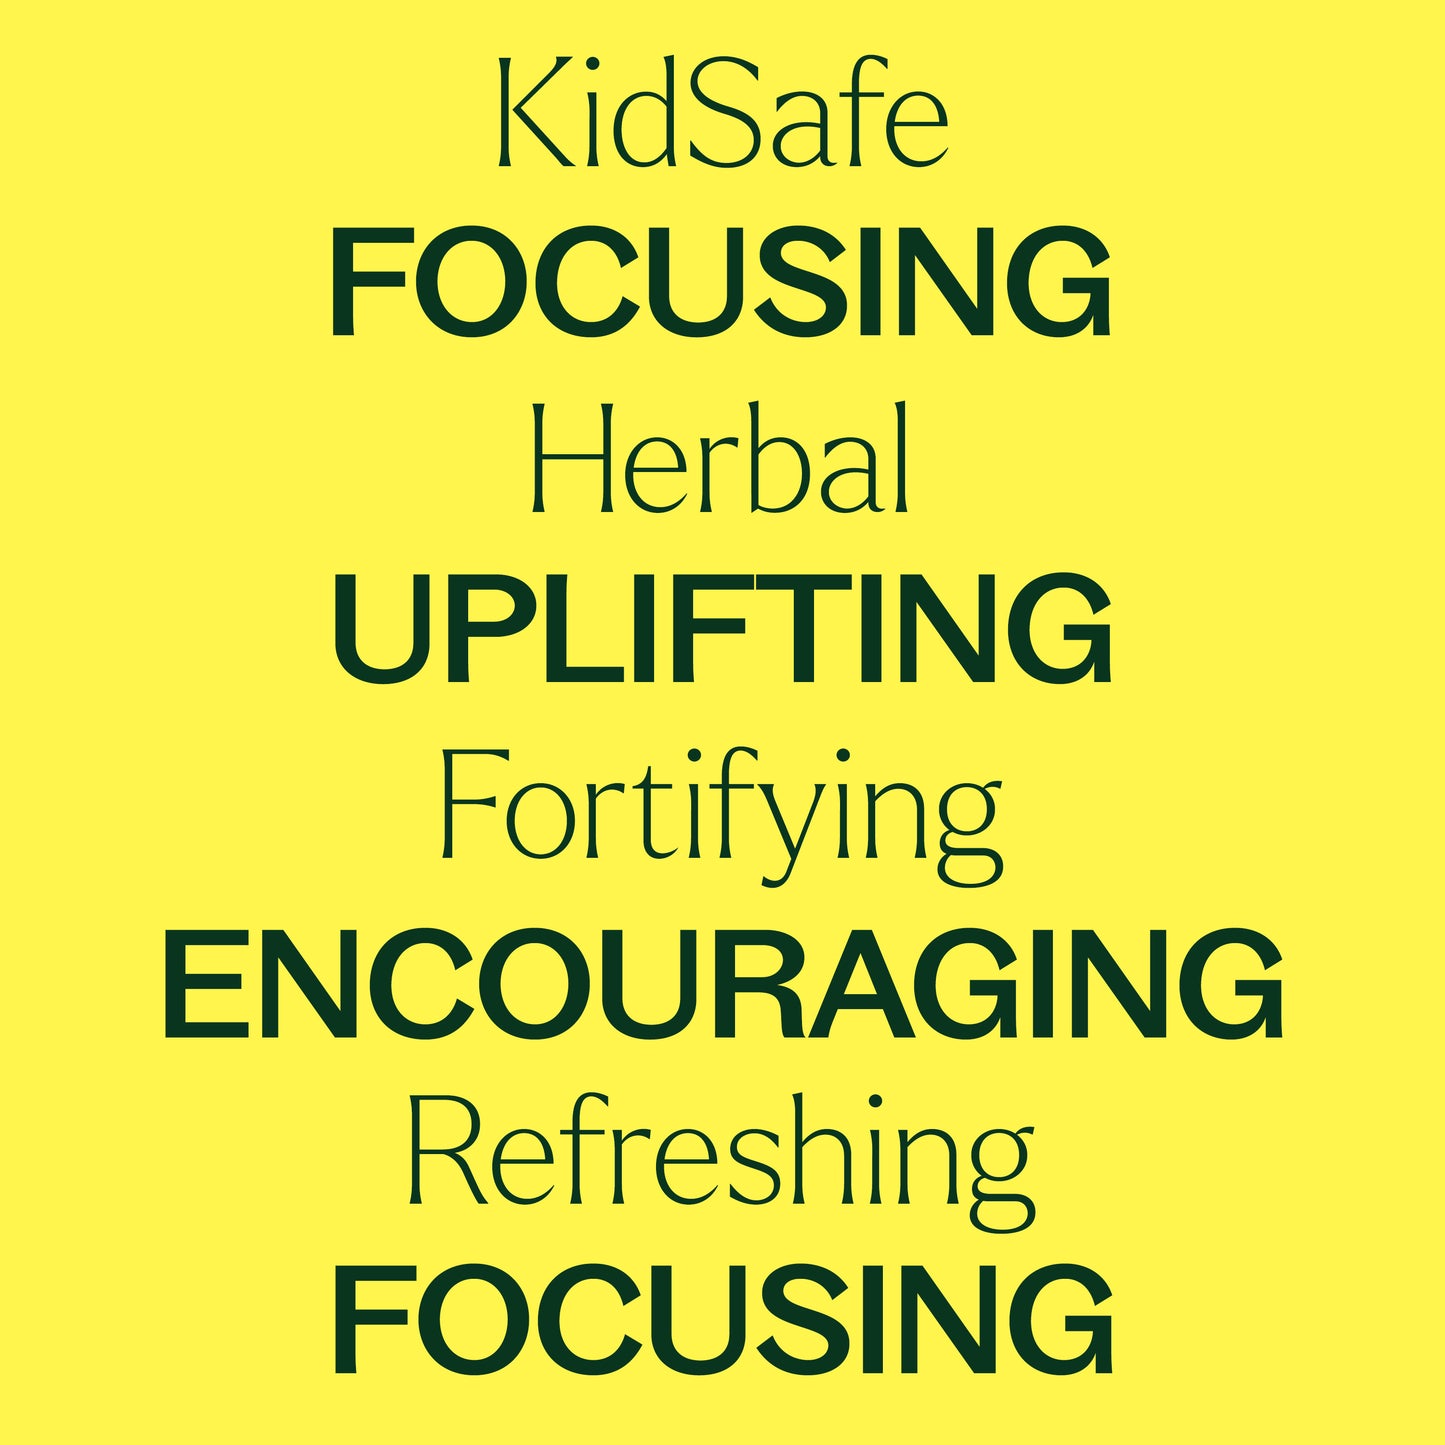 KidSafe School Days 3 Set key features: KidSafe, focusing, herbal, uplifting, fortifying, encouraging, refreshing, focusing